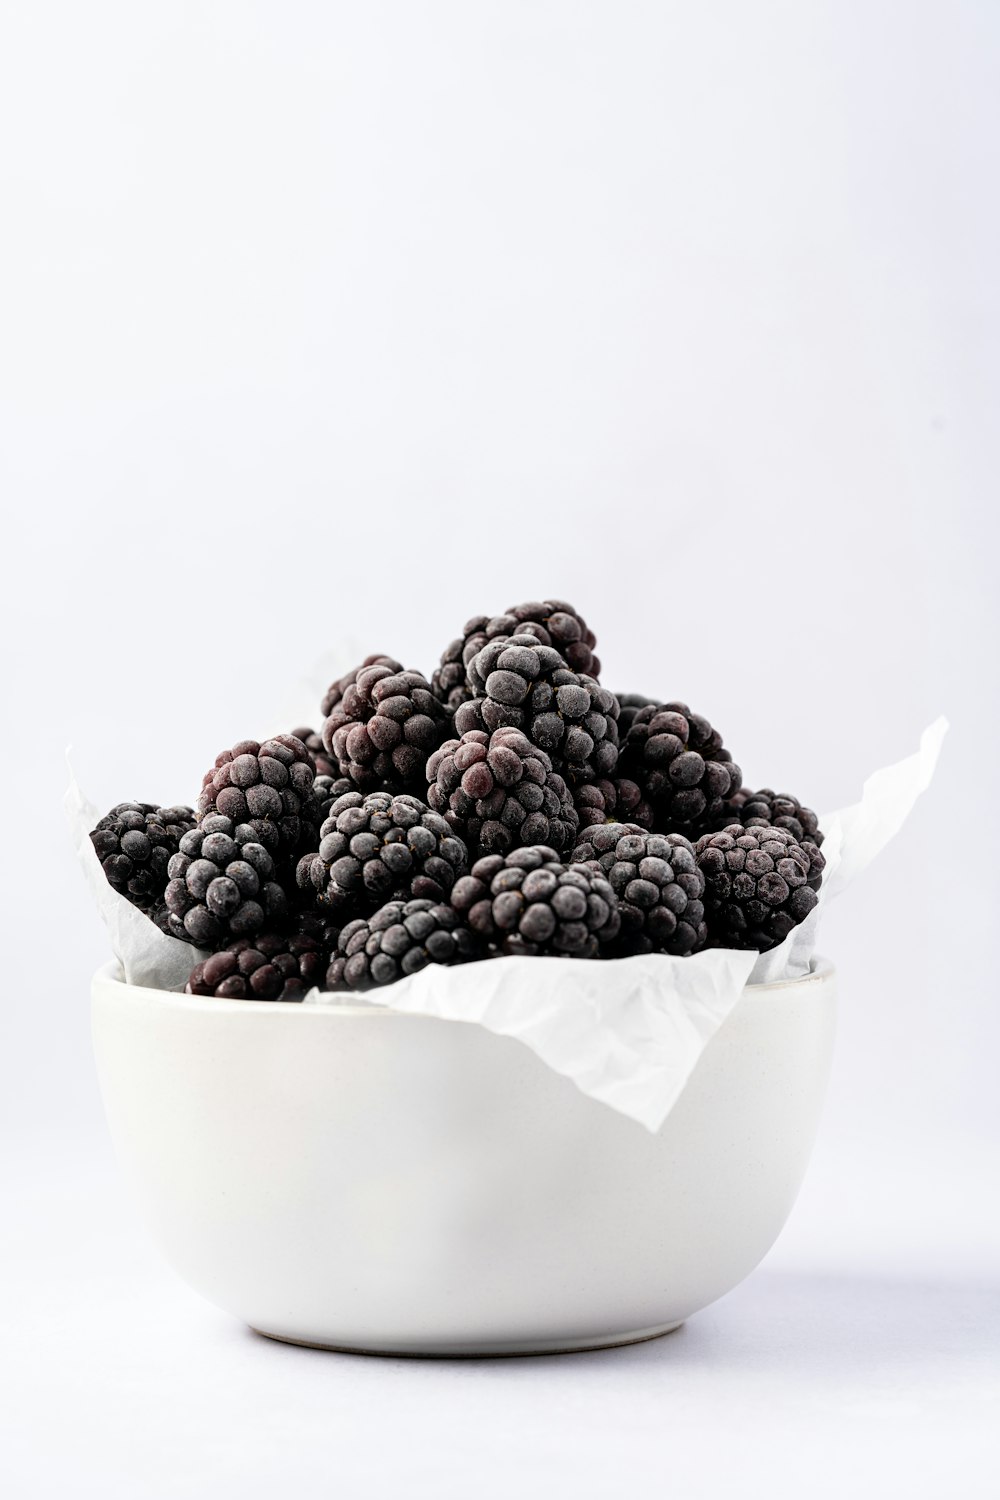 a bowl of blackberries